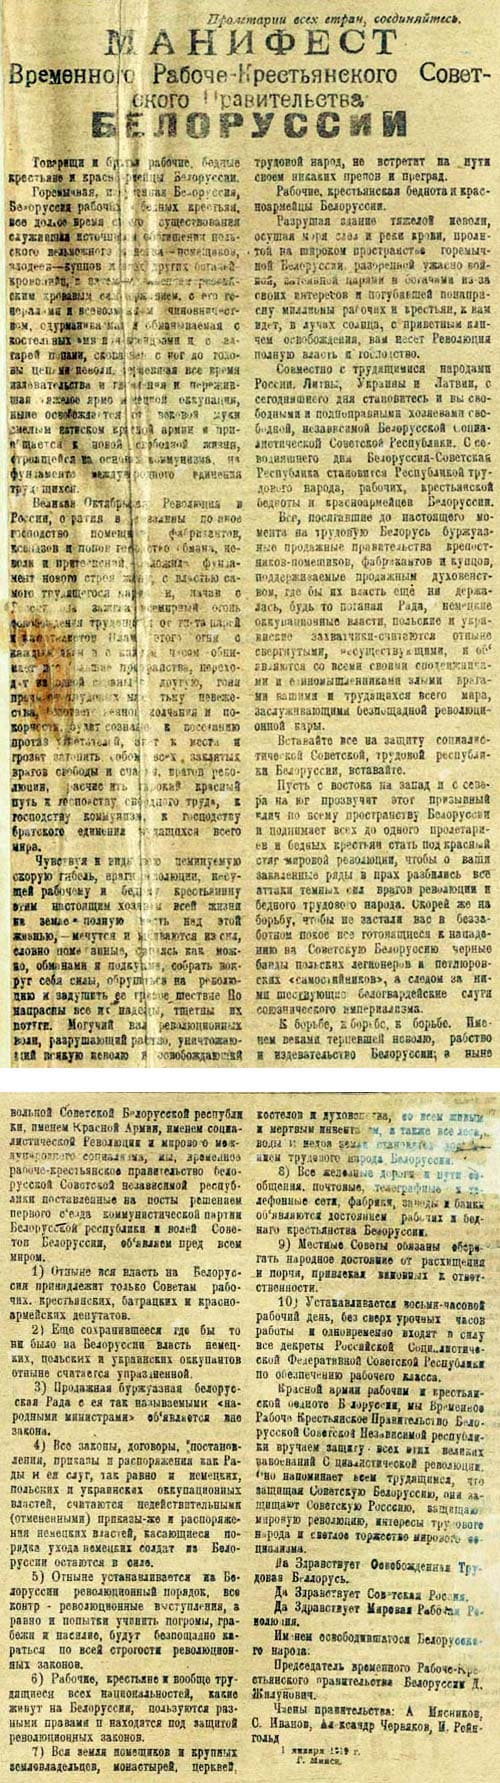 Манифест Временного рабоче-крестьянского советского правительства Белоруссии от 1 января 1919 г.-с. 0